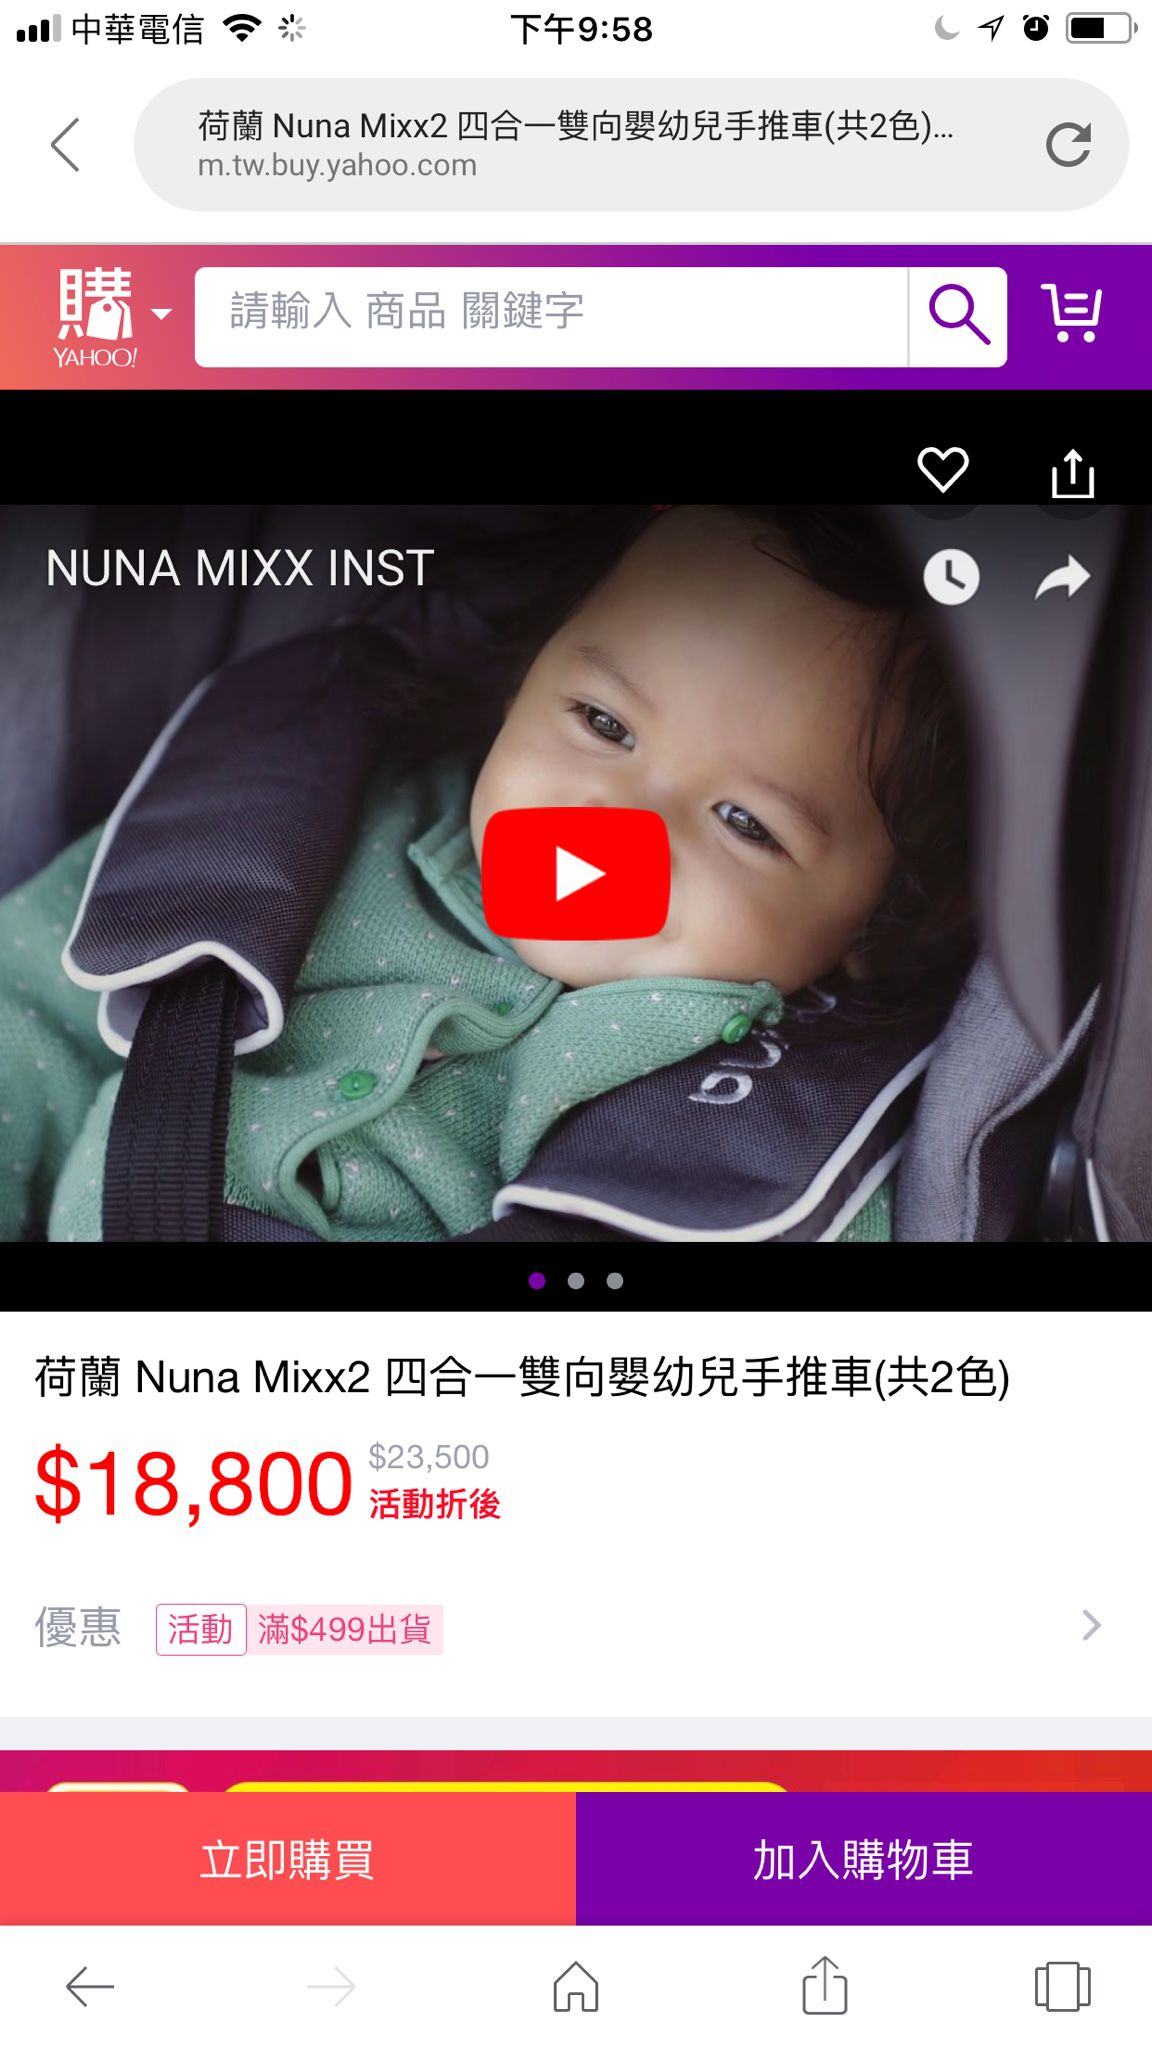 Nuna Mixx2